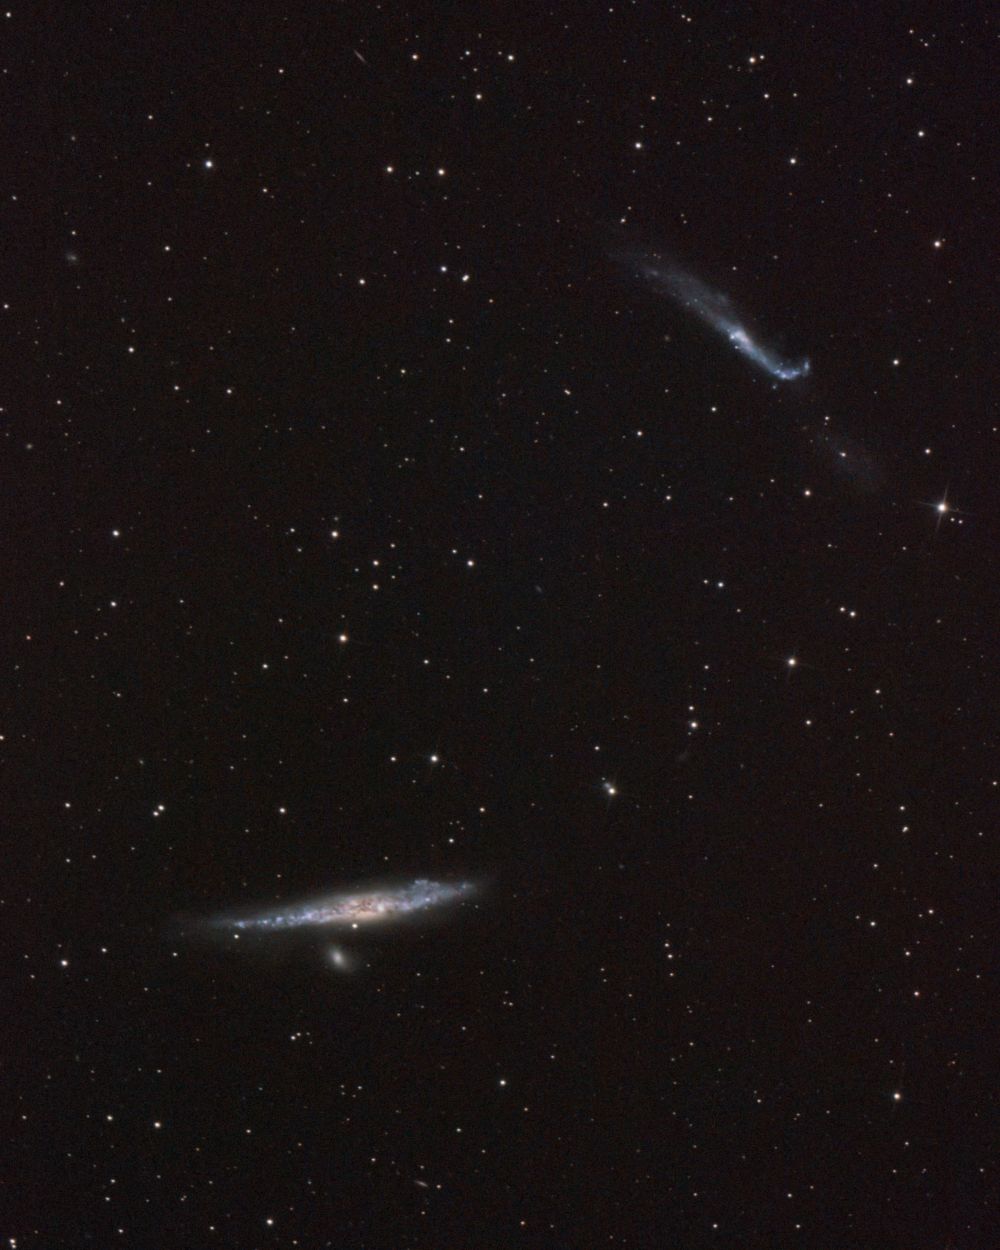 Галактики NGC-4631 и NGC-4656 (кит и клюшка)